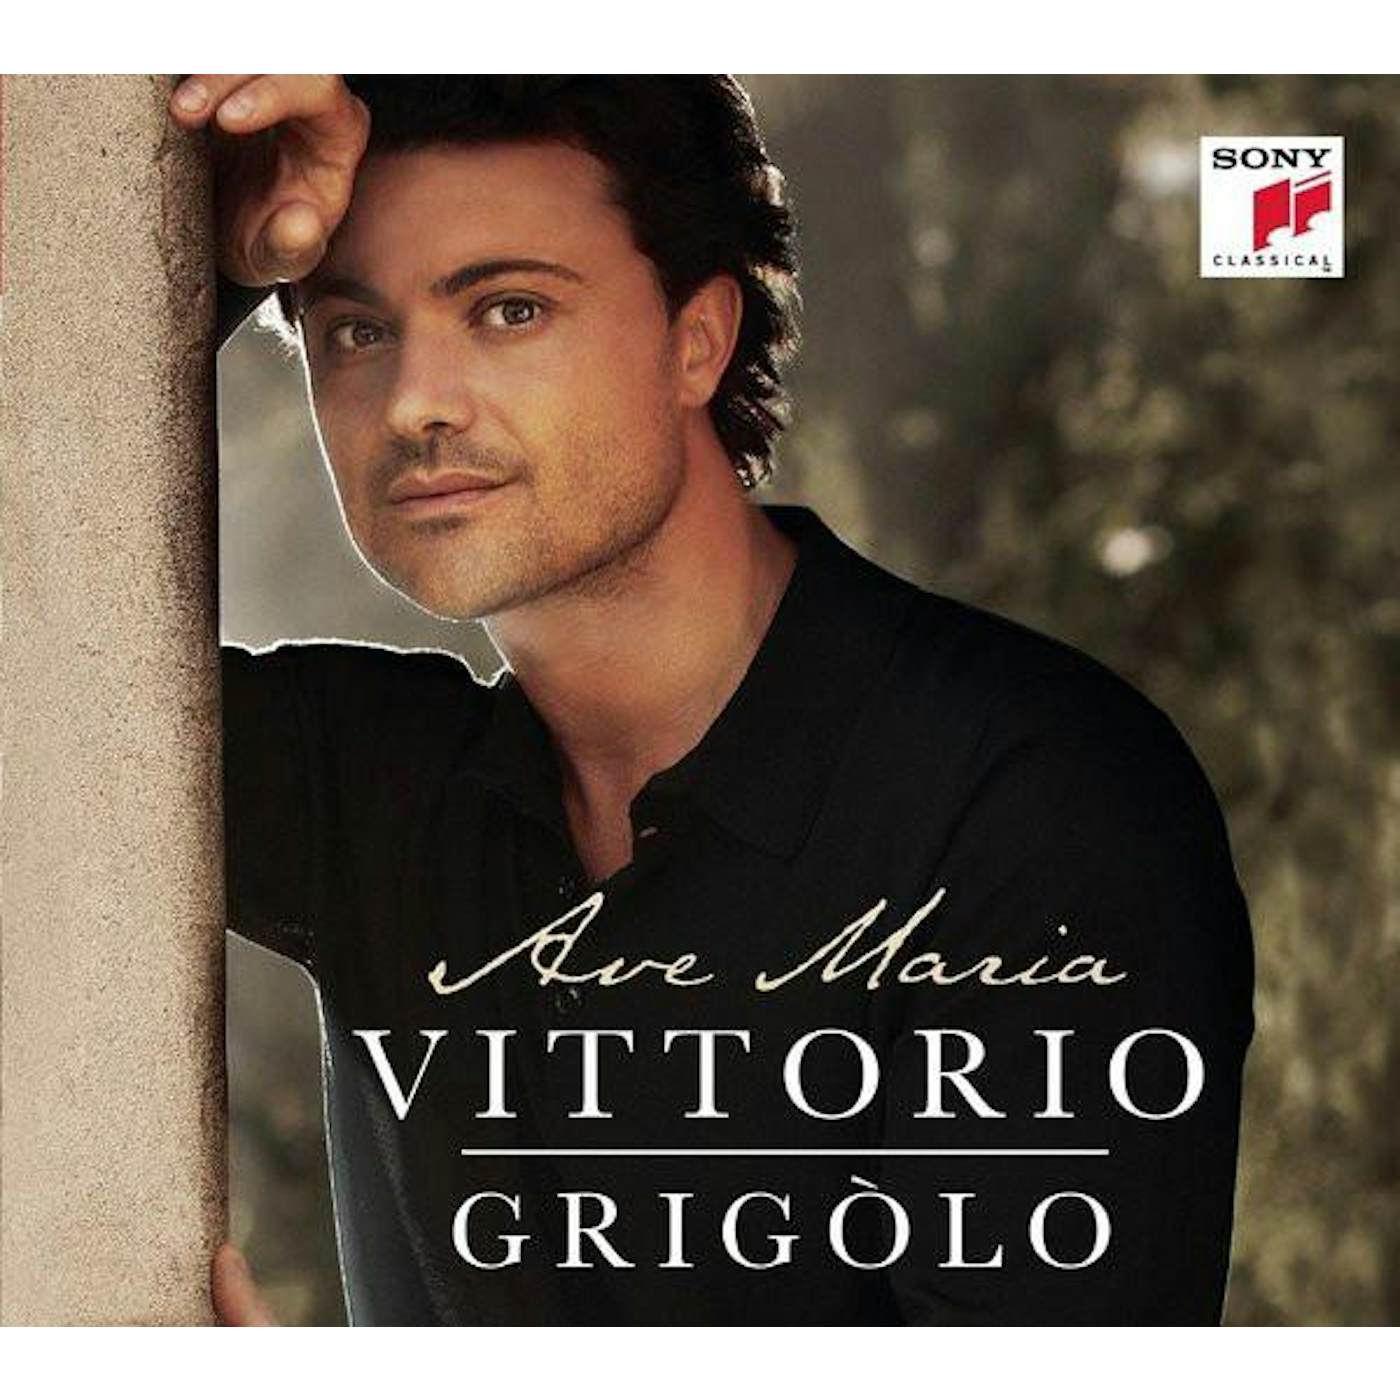 Vittorio Grigolo AVE MARIA CD